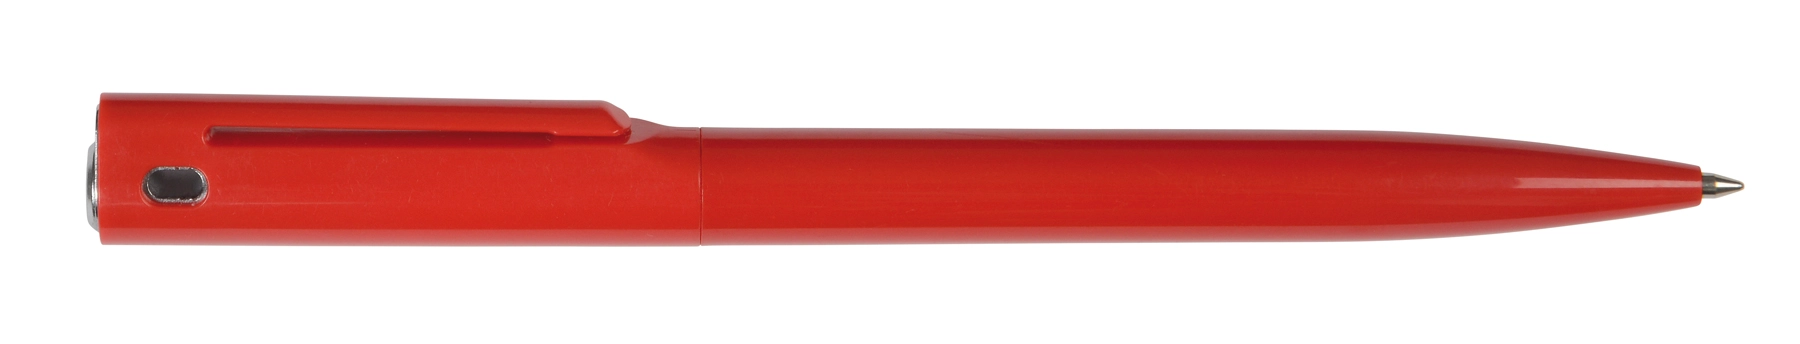 Długopis VERMONT, czerwony, srebrny 56-1102124 czerwony